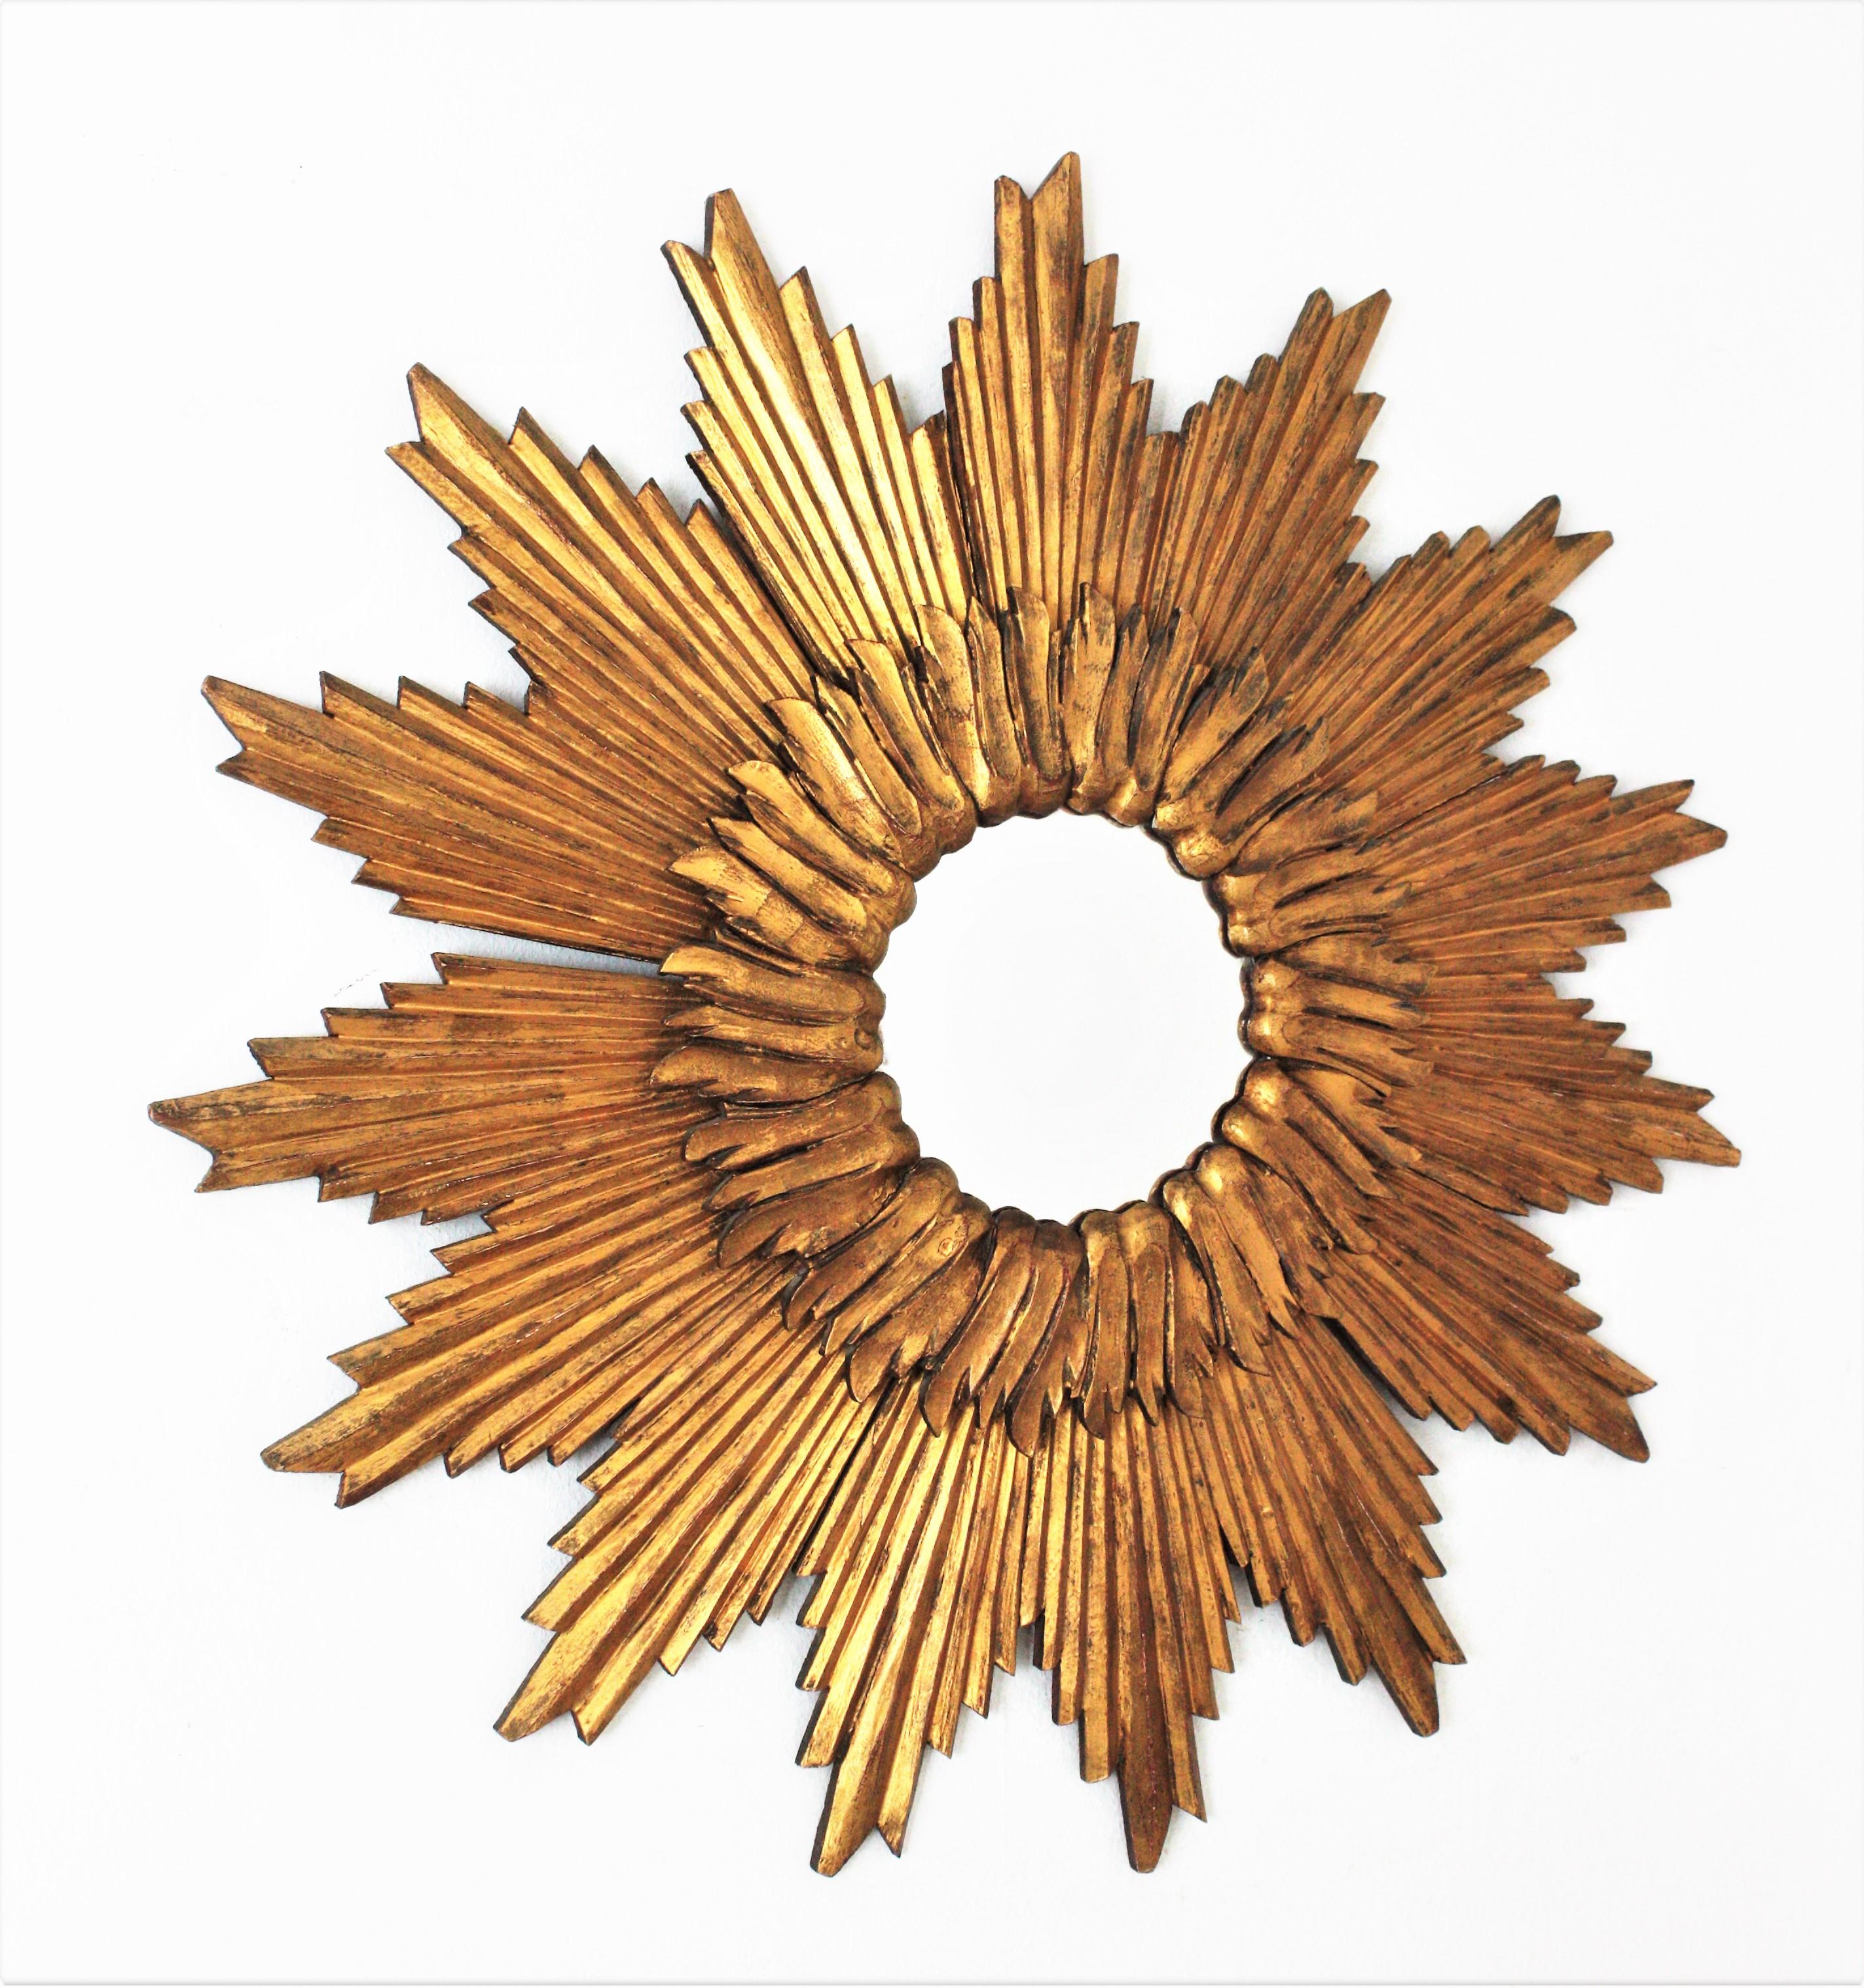 Miroir convexe en bois sculpté et doré. France, années 1960.
Le verre est encadré par une couche circulaire de poutres courtes et une grande couche de poutres en bois doré avec une disposition en forme de soleil ou d'étoile. 
Ce miroir glamour sera